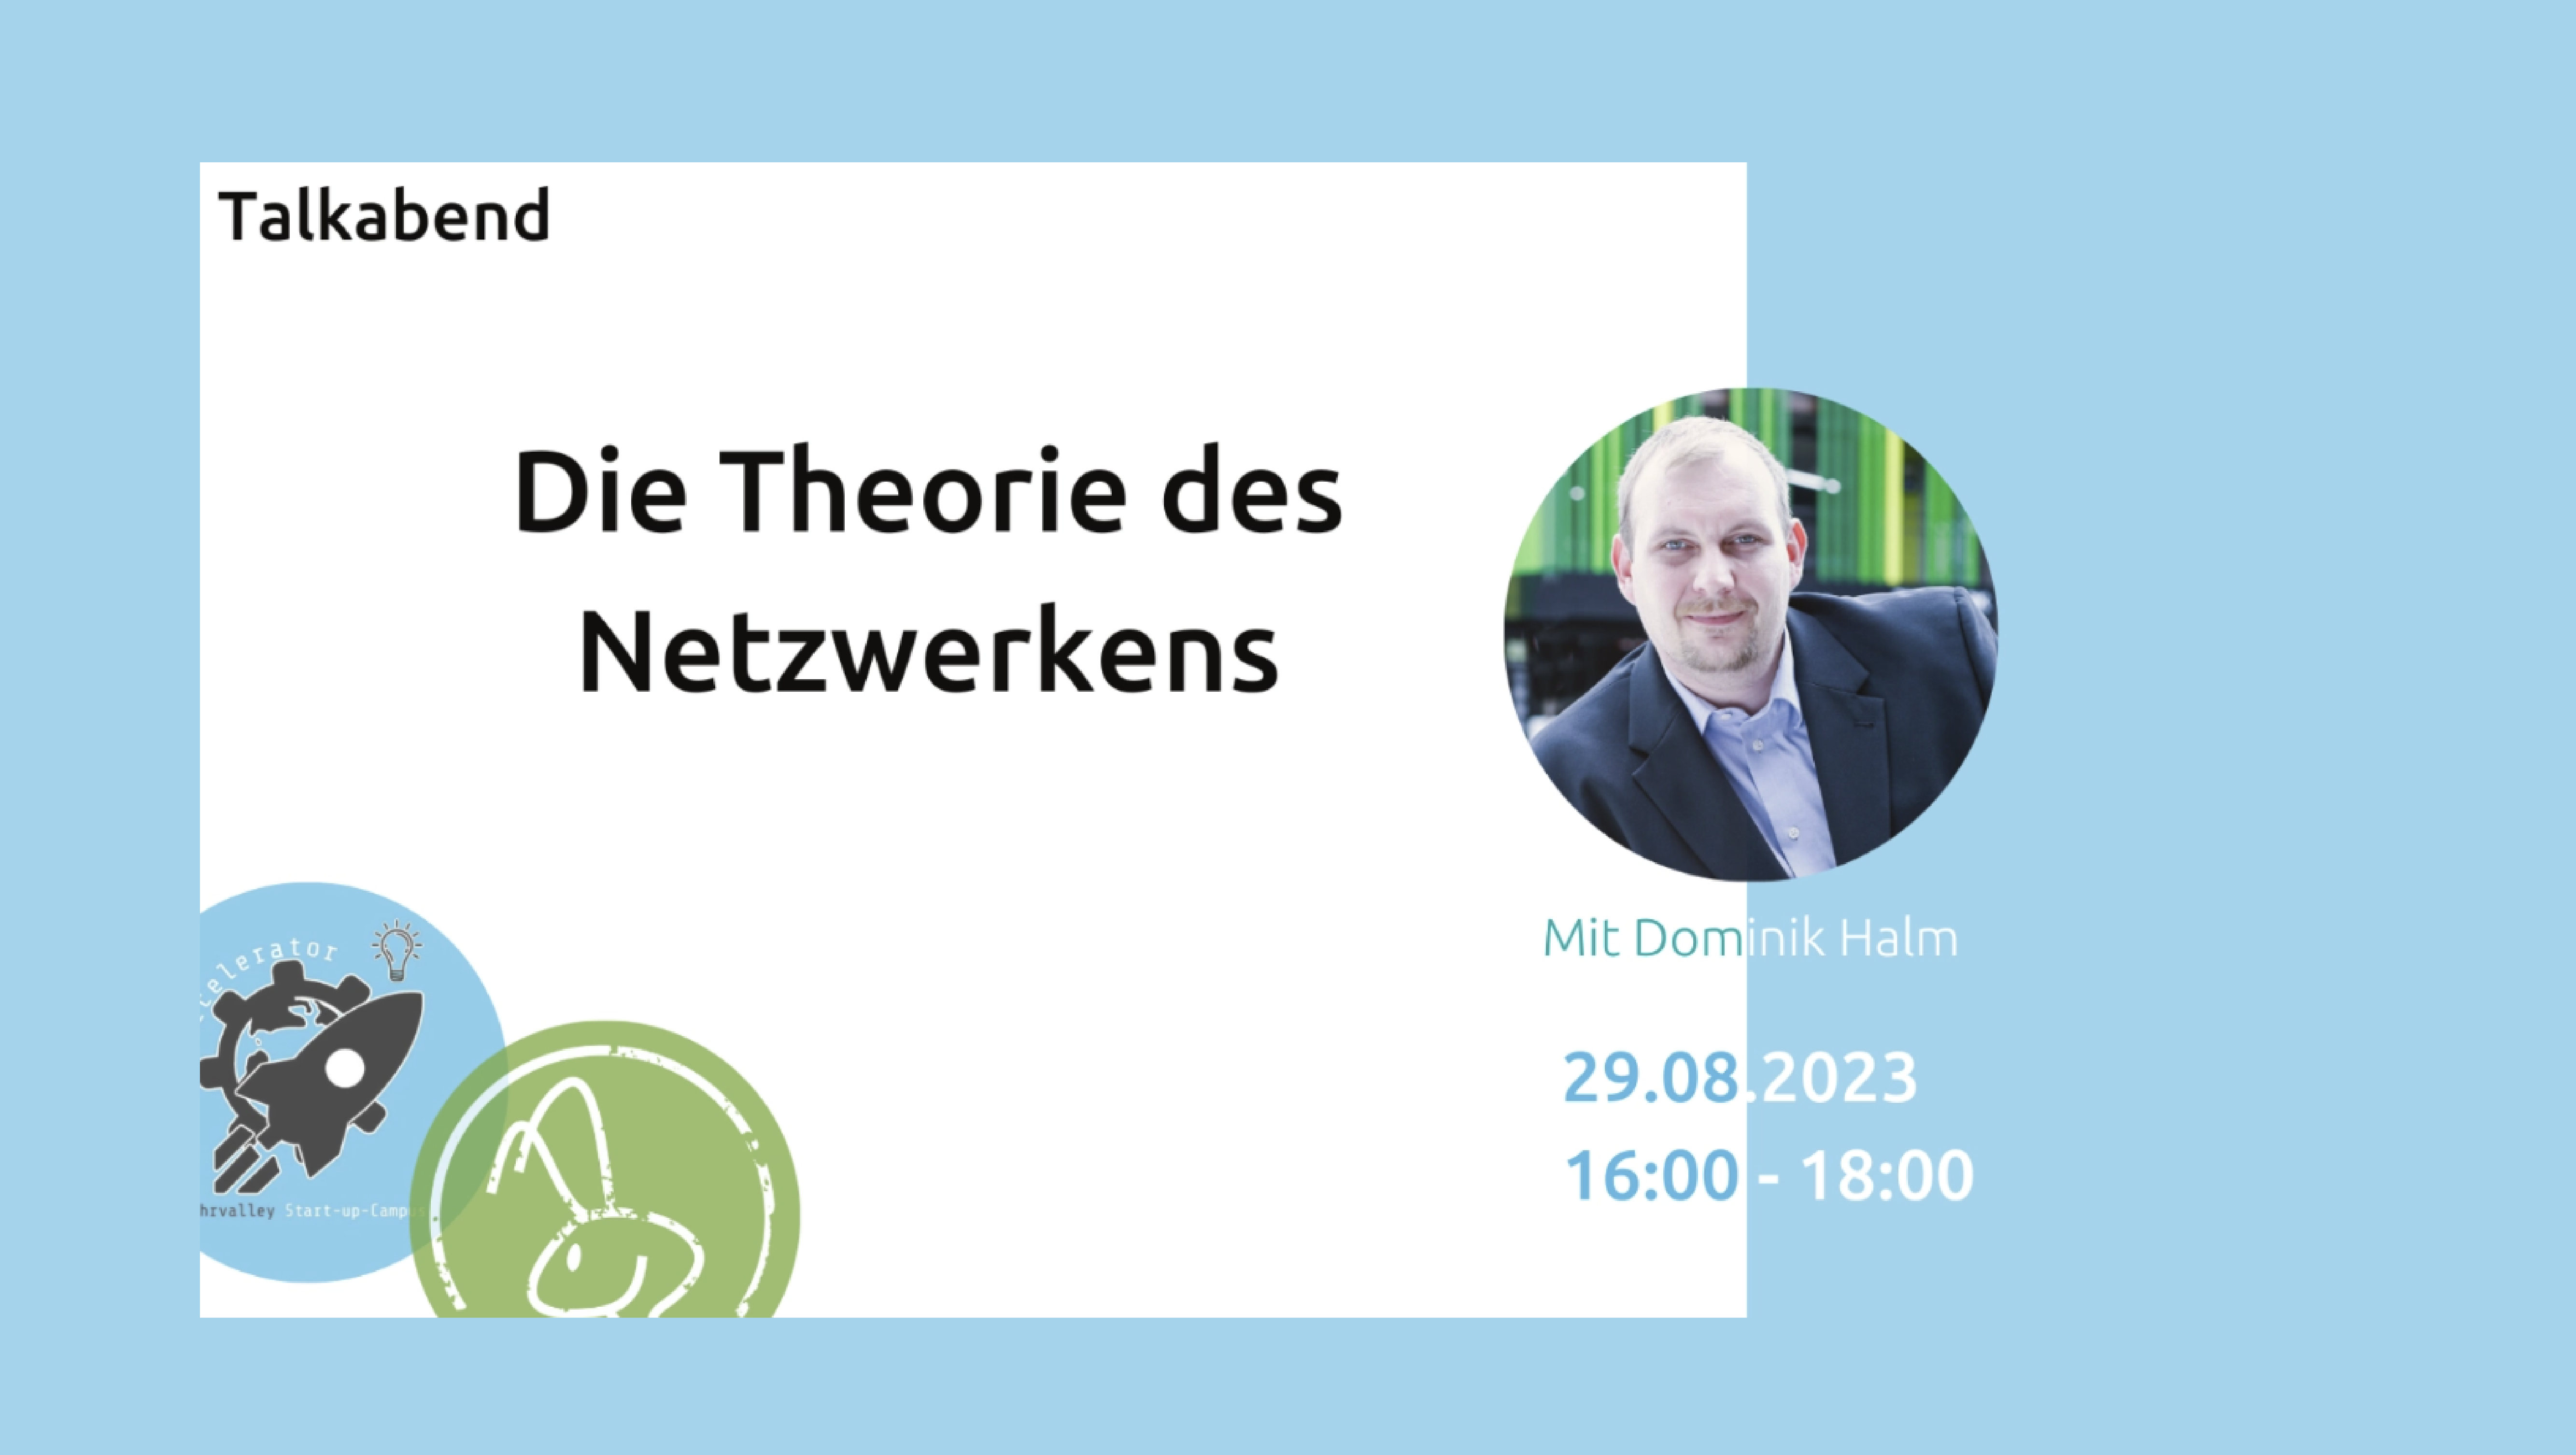 "Theorie des Netzwerkens"  - Tipps, Hacks und Fails mit Dominik Halm vom Wecon Netzwerk Bochum